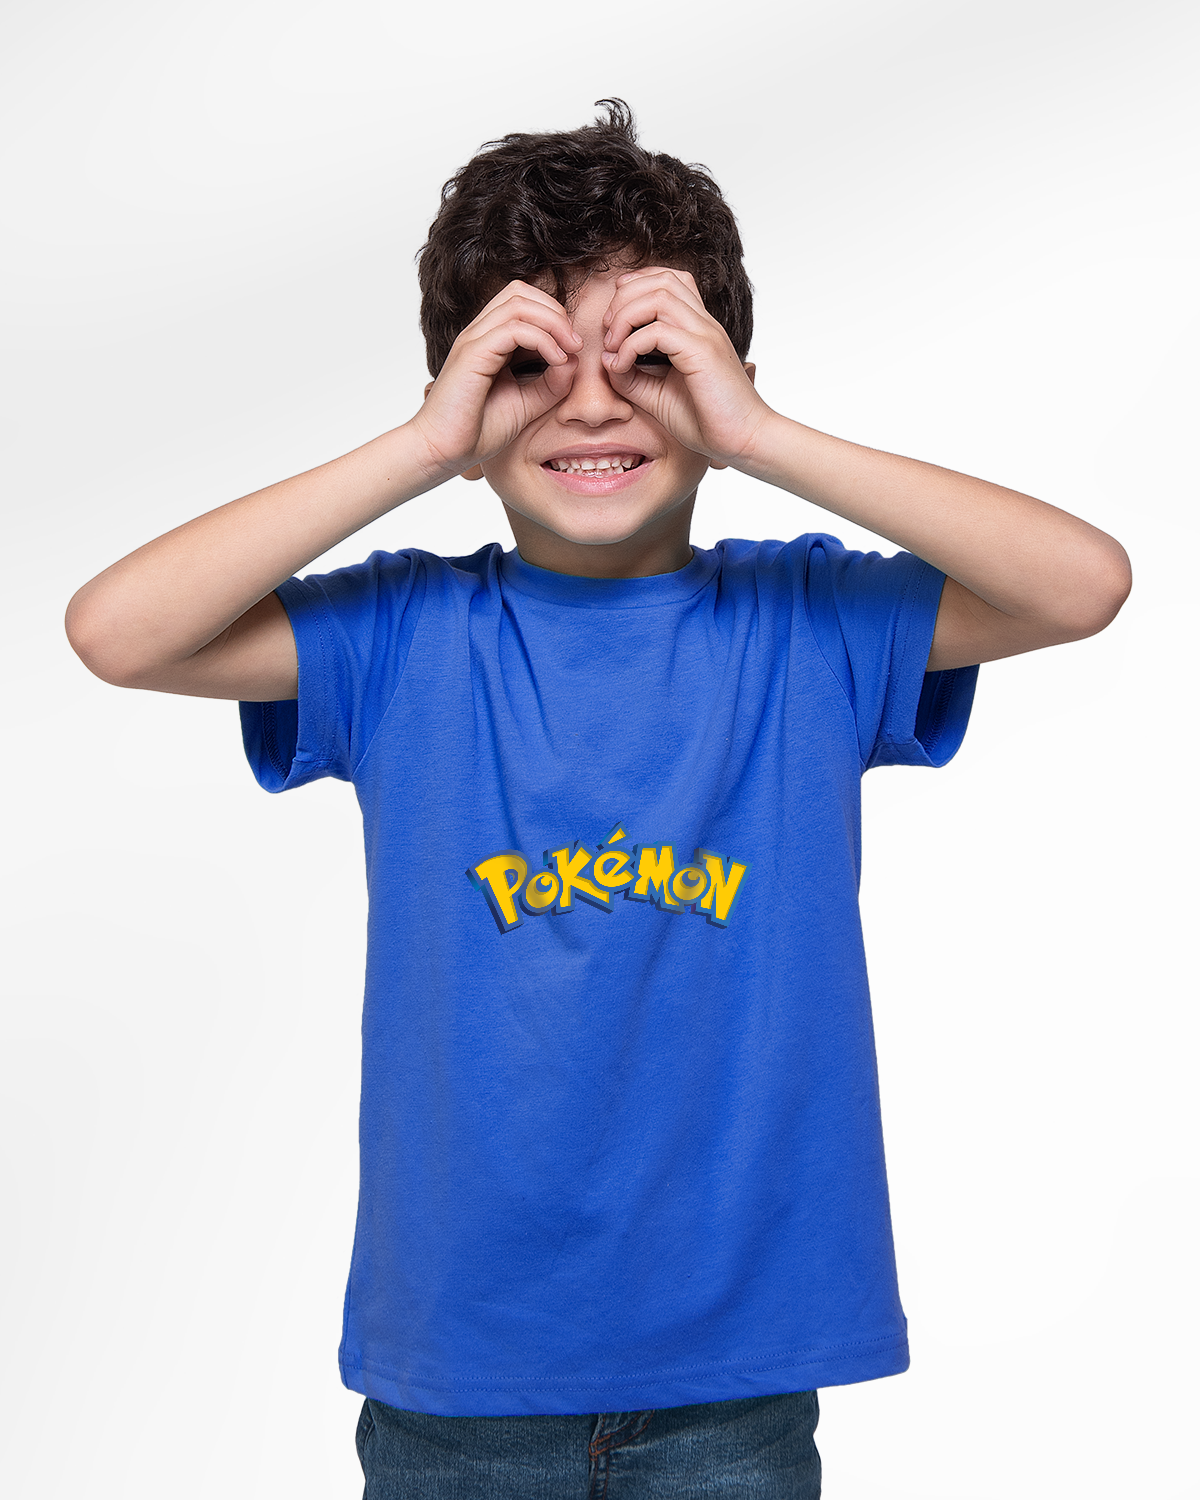 T-shirt For Boys (Bokemon)